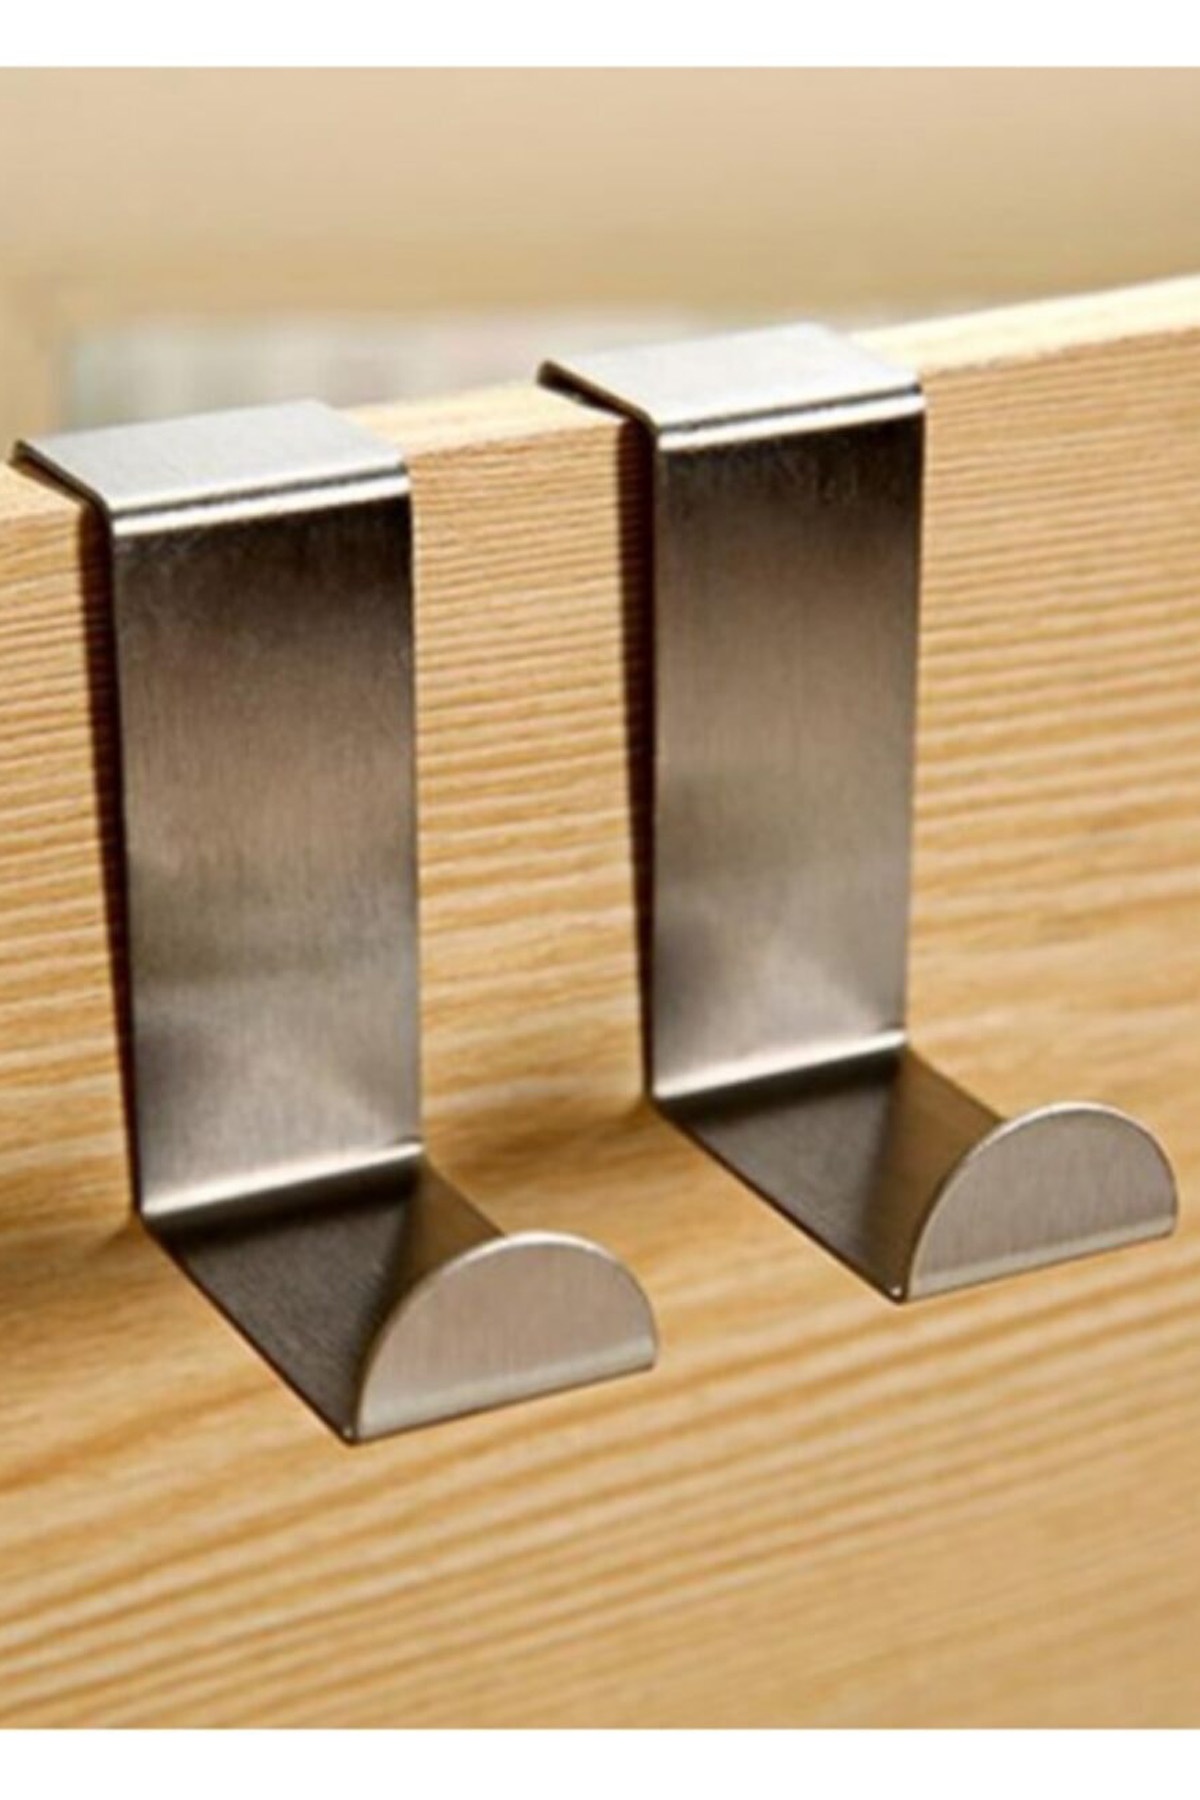 Paslanmaz Çelik Dolap Ve Çekmece Kapı Üstü Metal Kanca Askı - 4lü Set